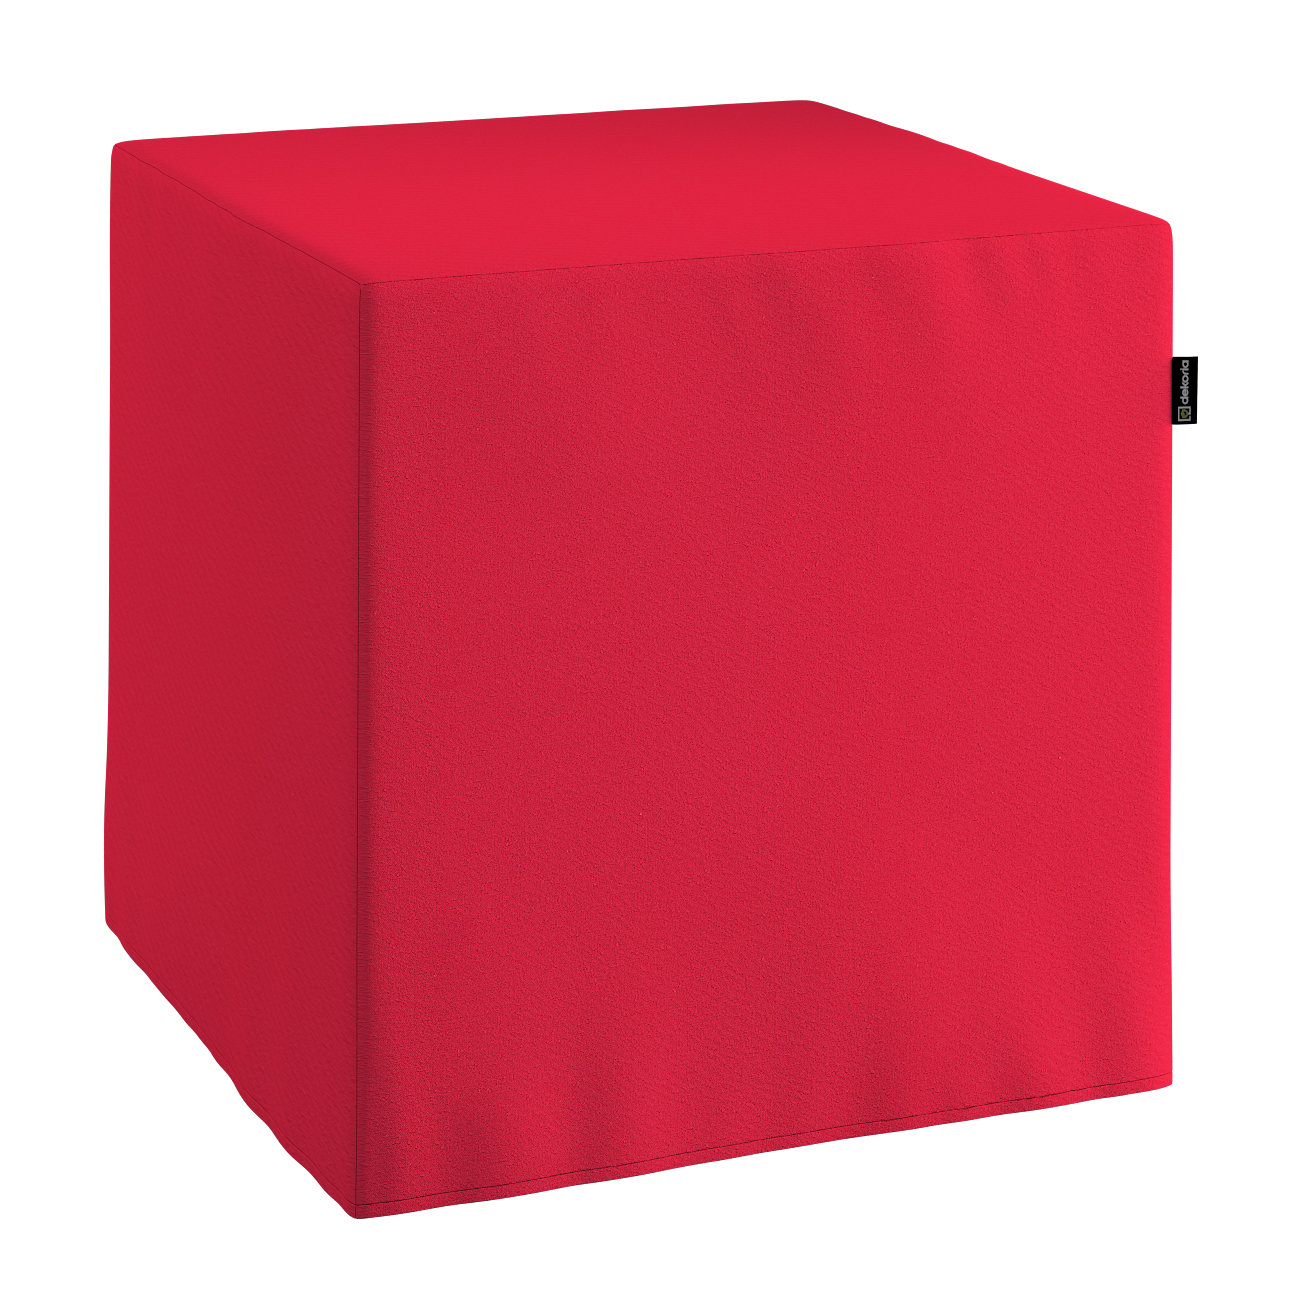 Dekoria Taburetka tvrdá, kocka, červená, 40 x 40 x 40 cm, Quadro, 136-19